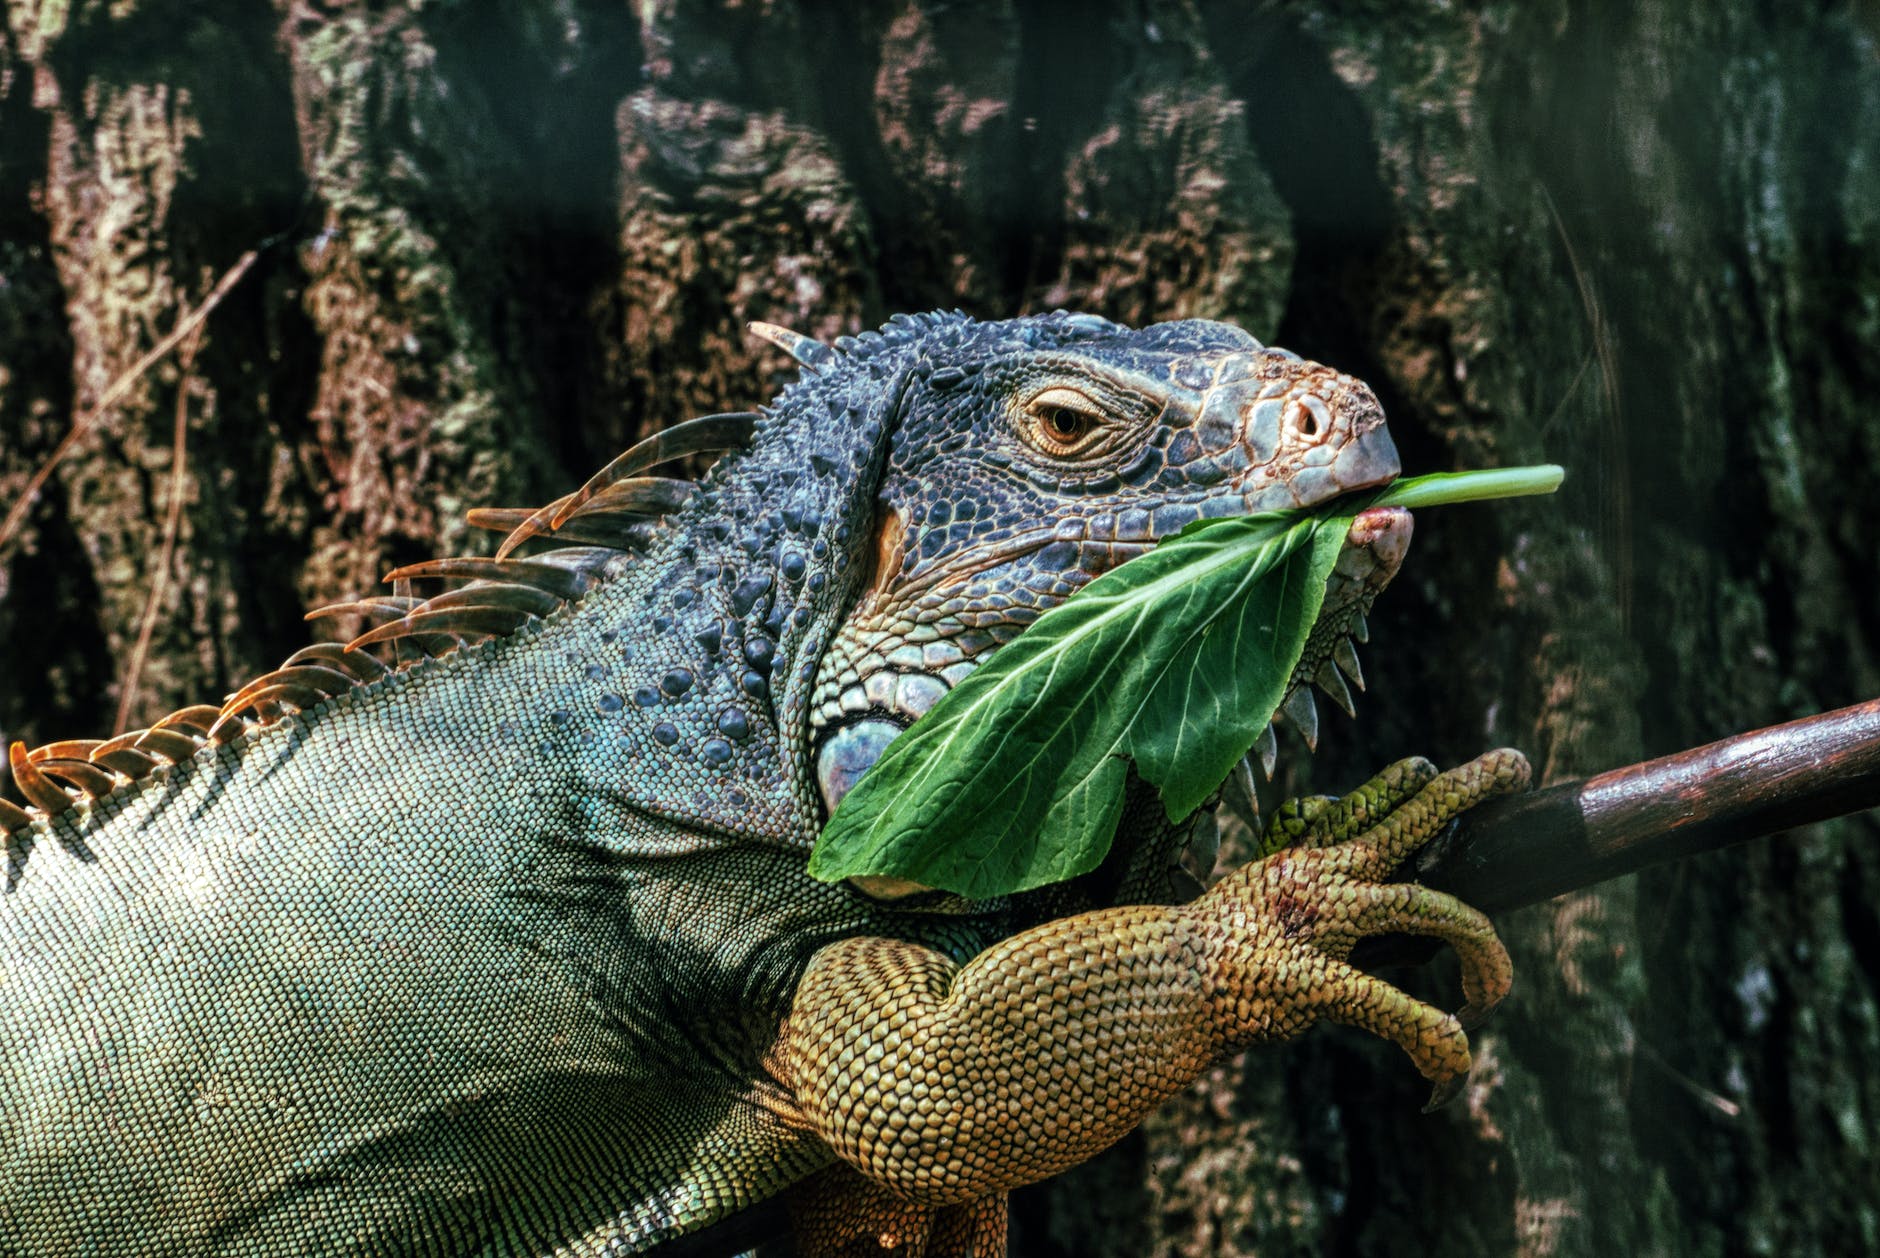 iguana eating green leaf in zoo